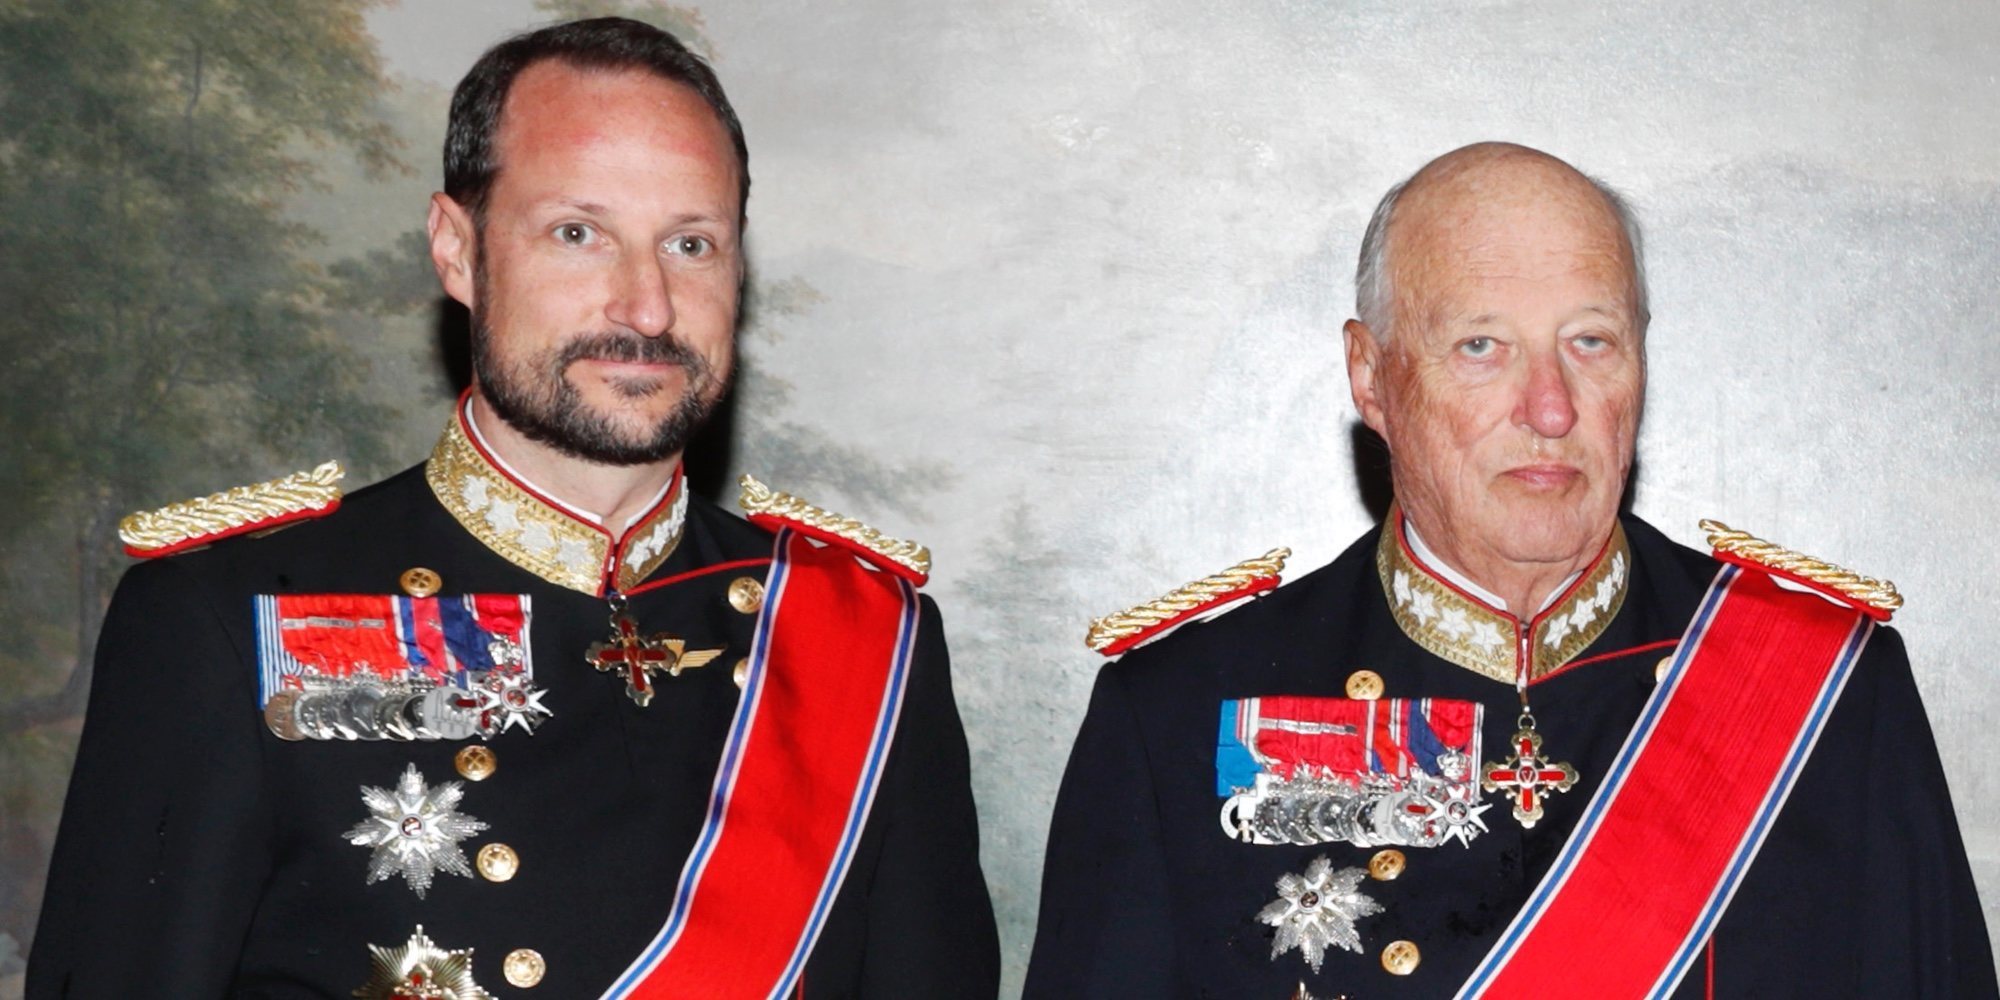 Haakon de Noruega toma las riendas de la Familia Real Noruega ante la enfermedad del Rey Harald